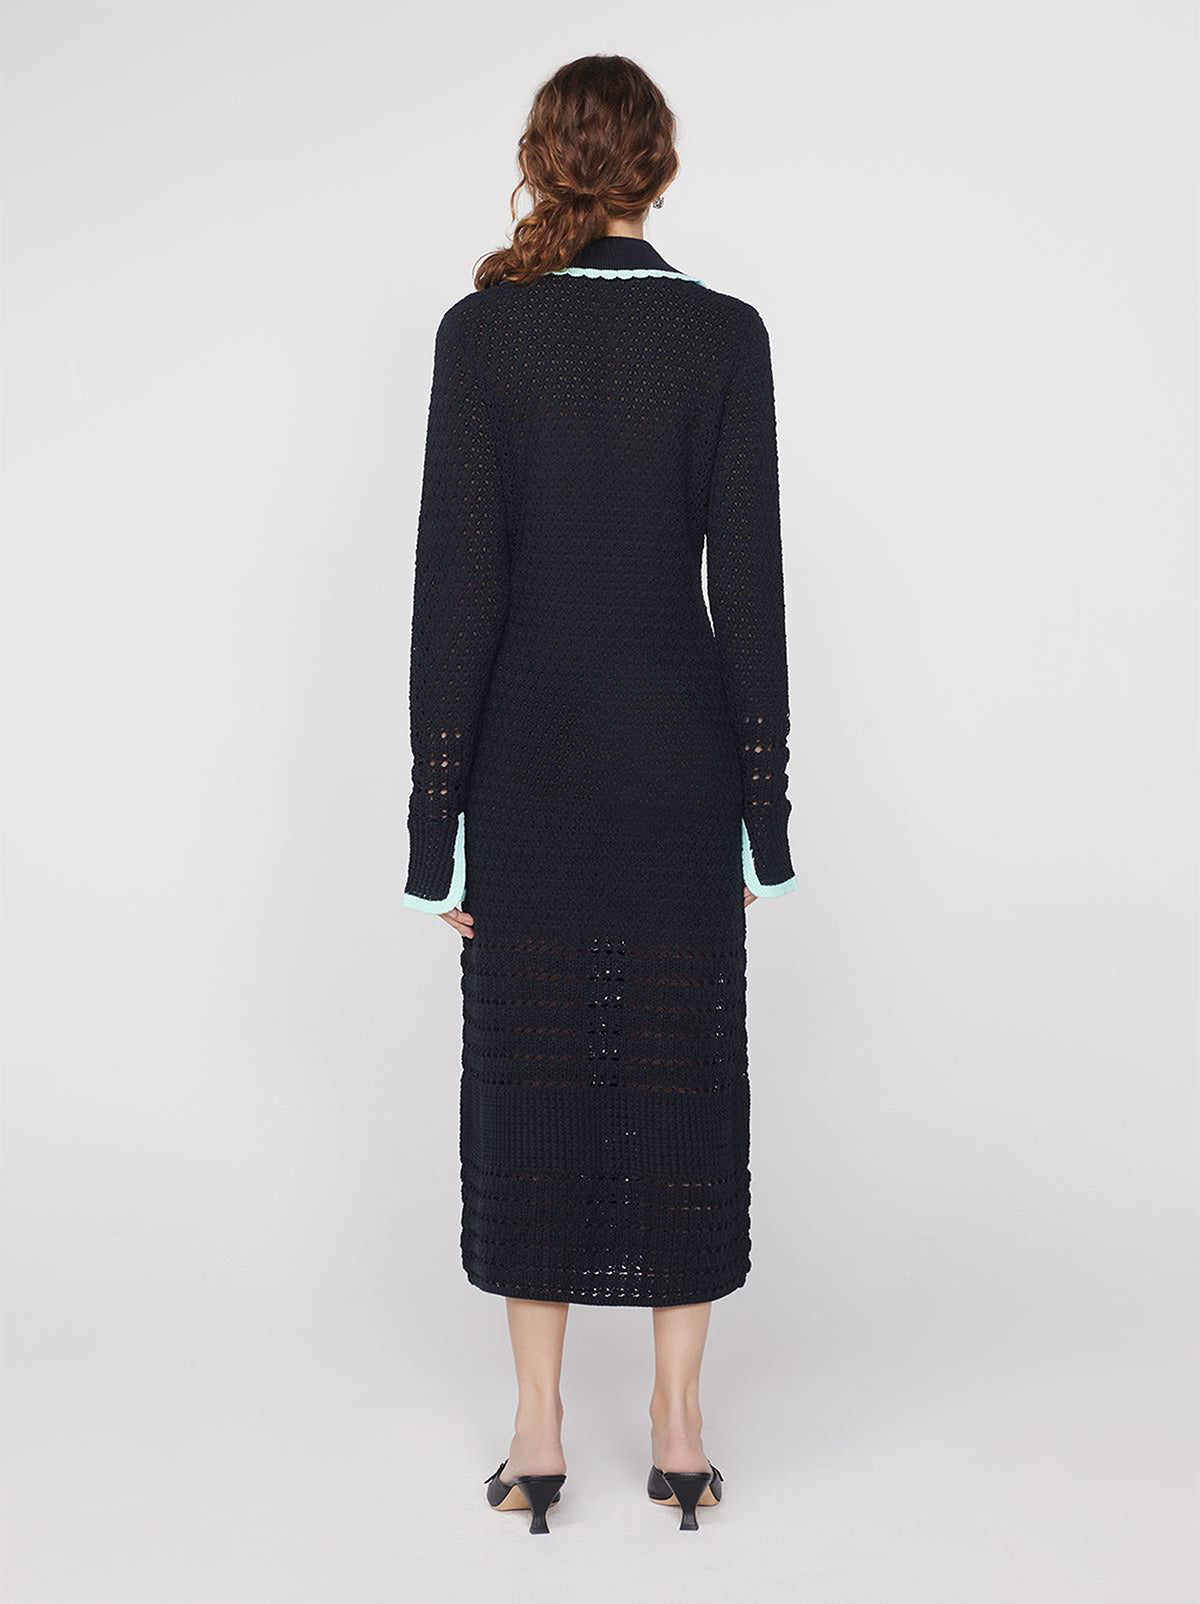 Delilah Black Crochet Knit Dress By KITRI Studio